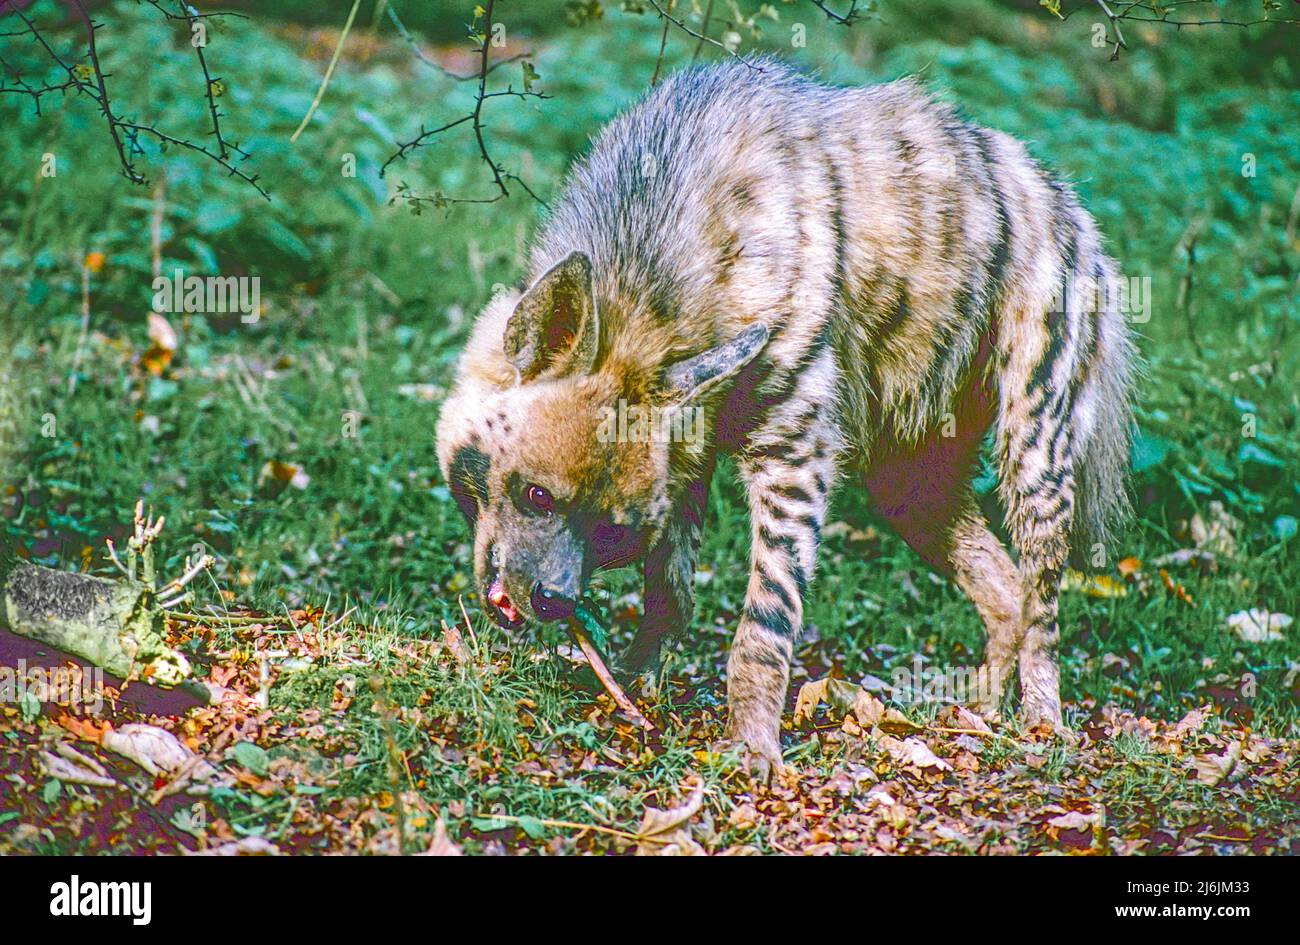 Hyena a strisce (Hyena hyena) con un bastone per affilare i denti. Si verifica dall'Africa settentrionale e orientale, dal Medio Oriente al Sub-Continente indiano. Foto Stock